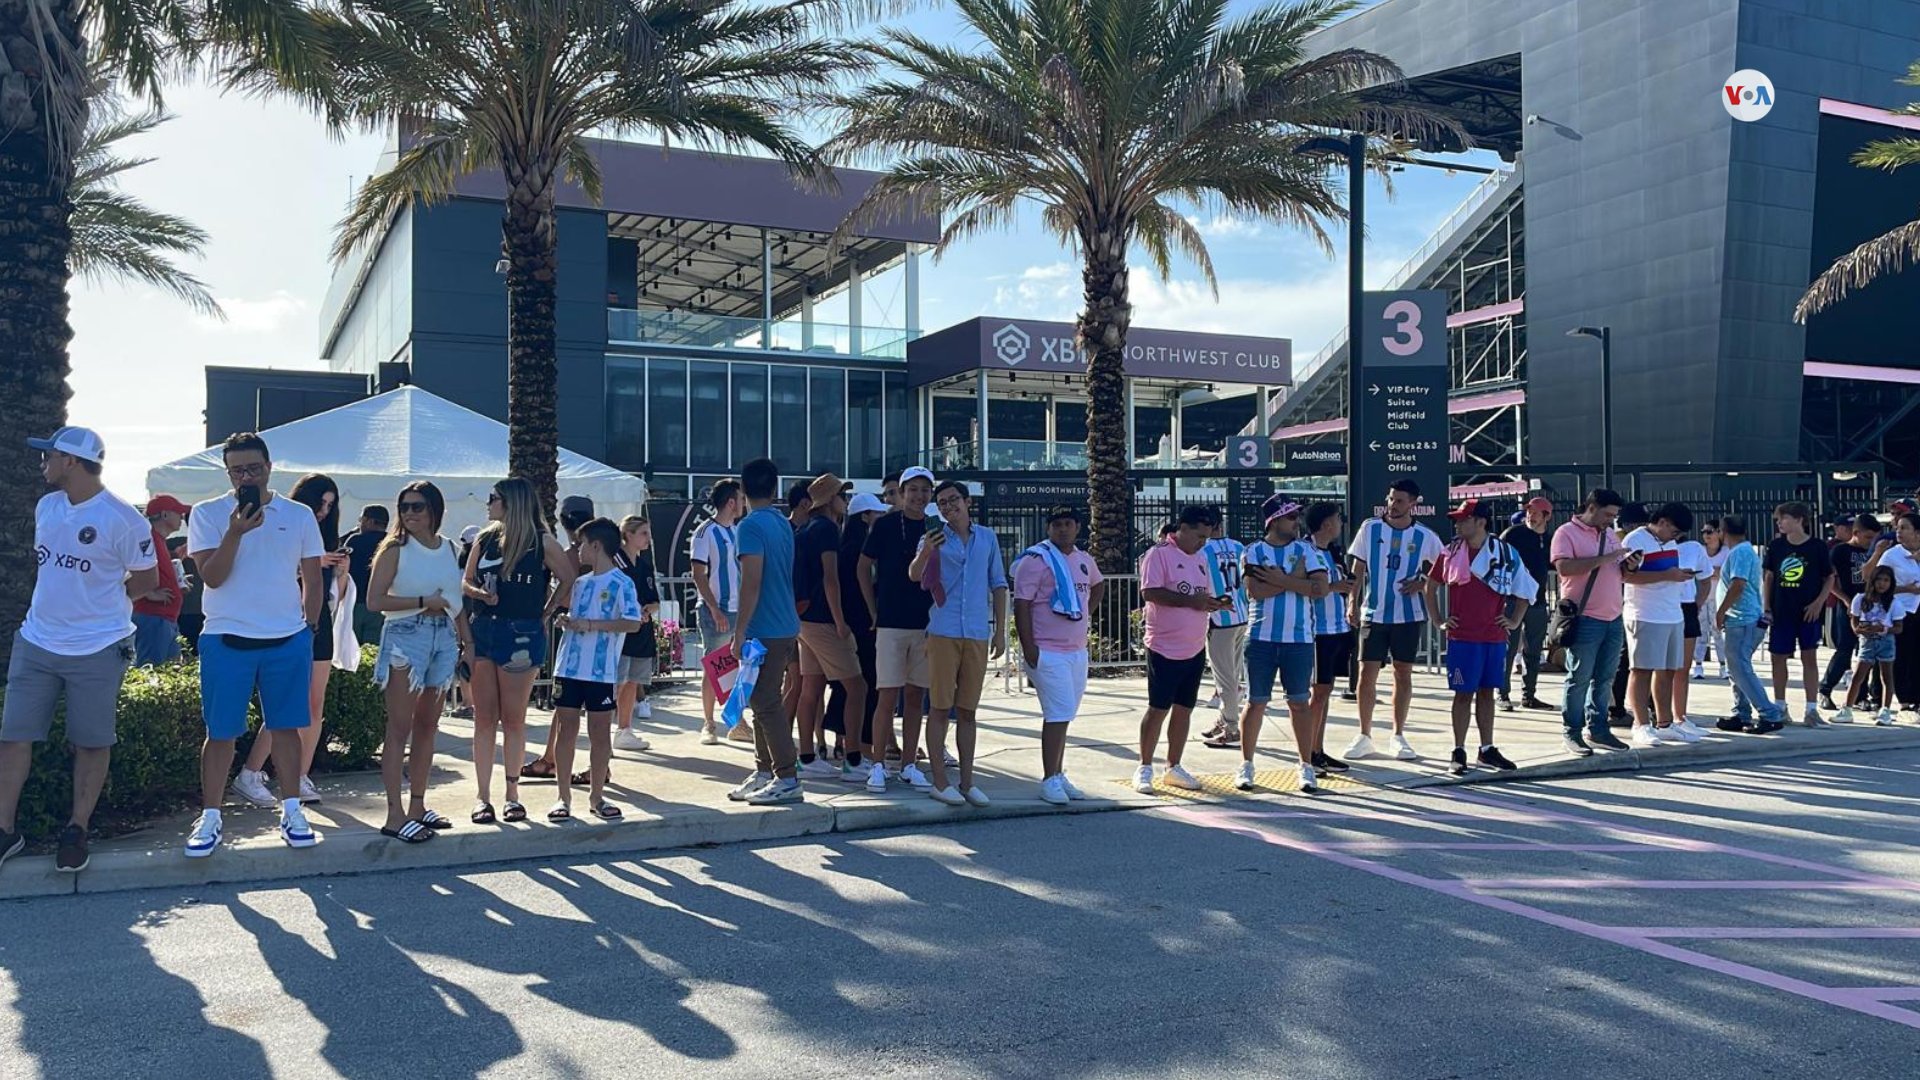 EN VIDEO: fanáticos de Messi se reúnen en el estadio Drive Pink de Fort Lauderdale para saludar a su ídolo